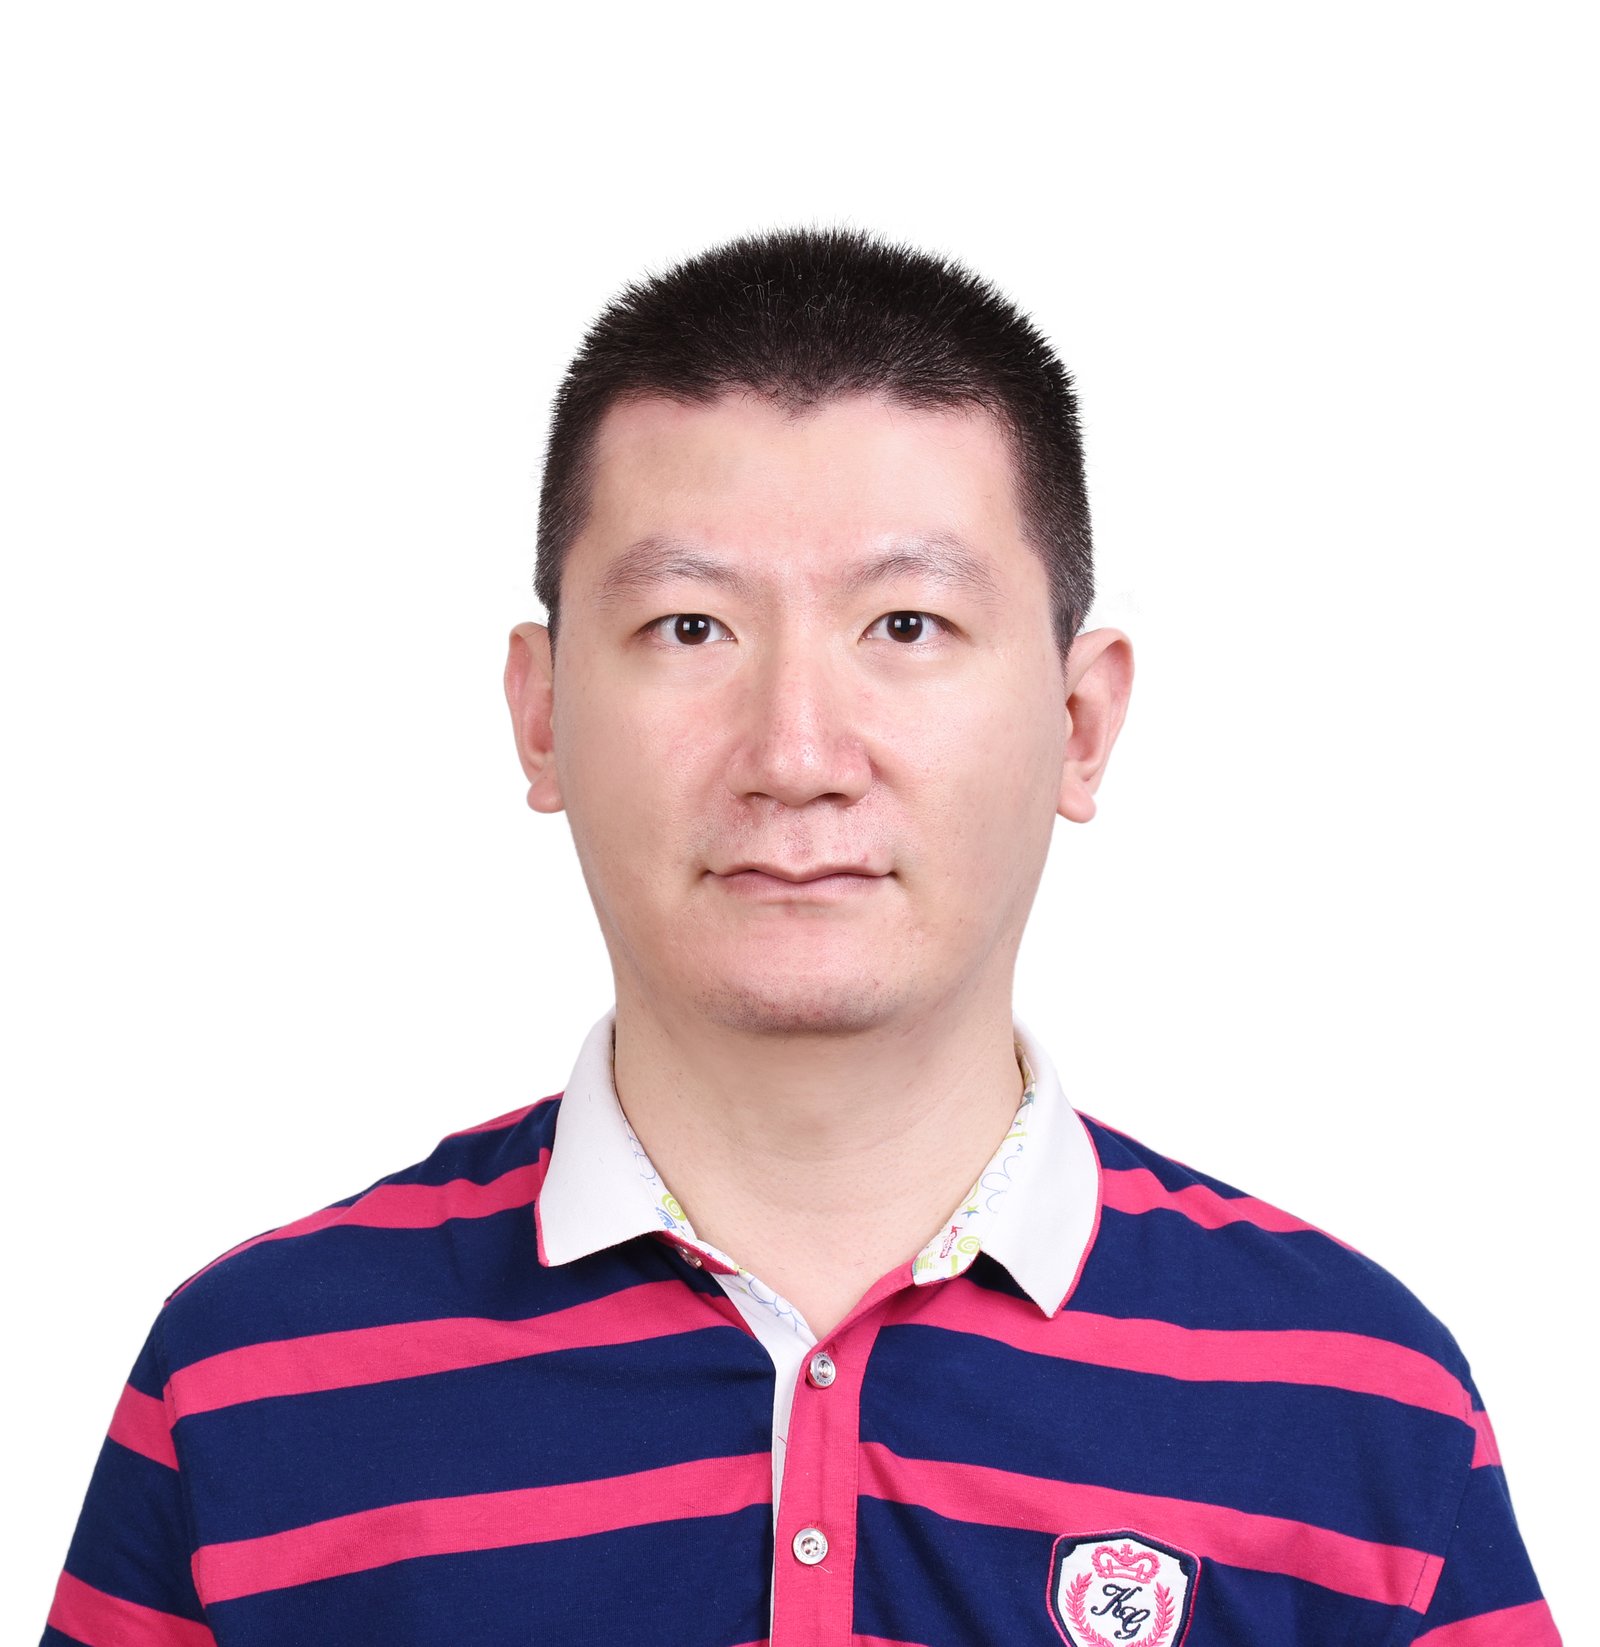 Prof. Wenbo Peng